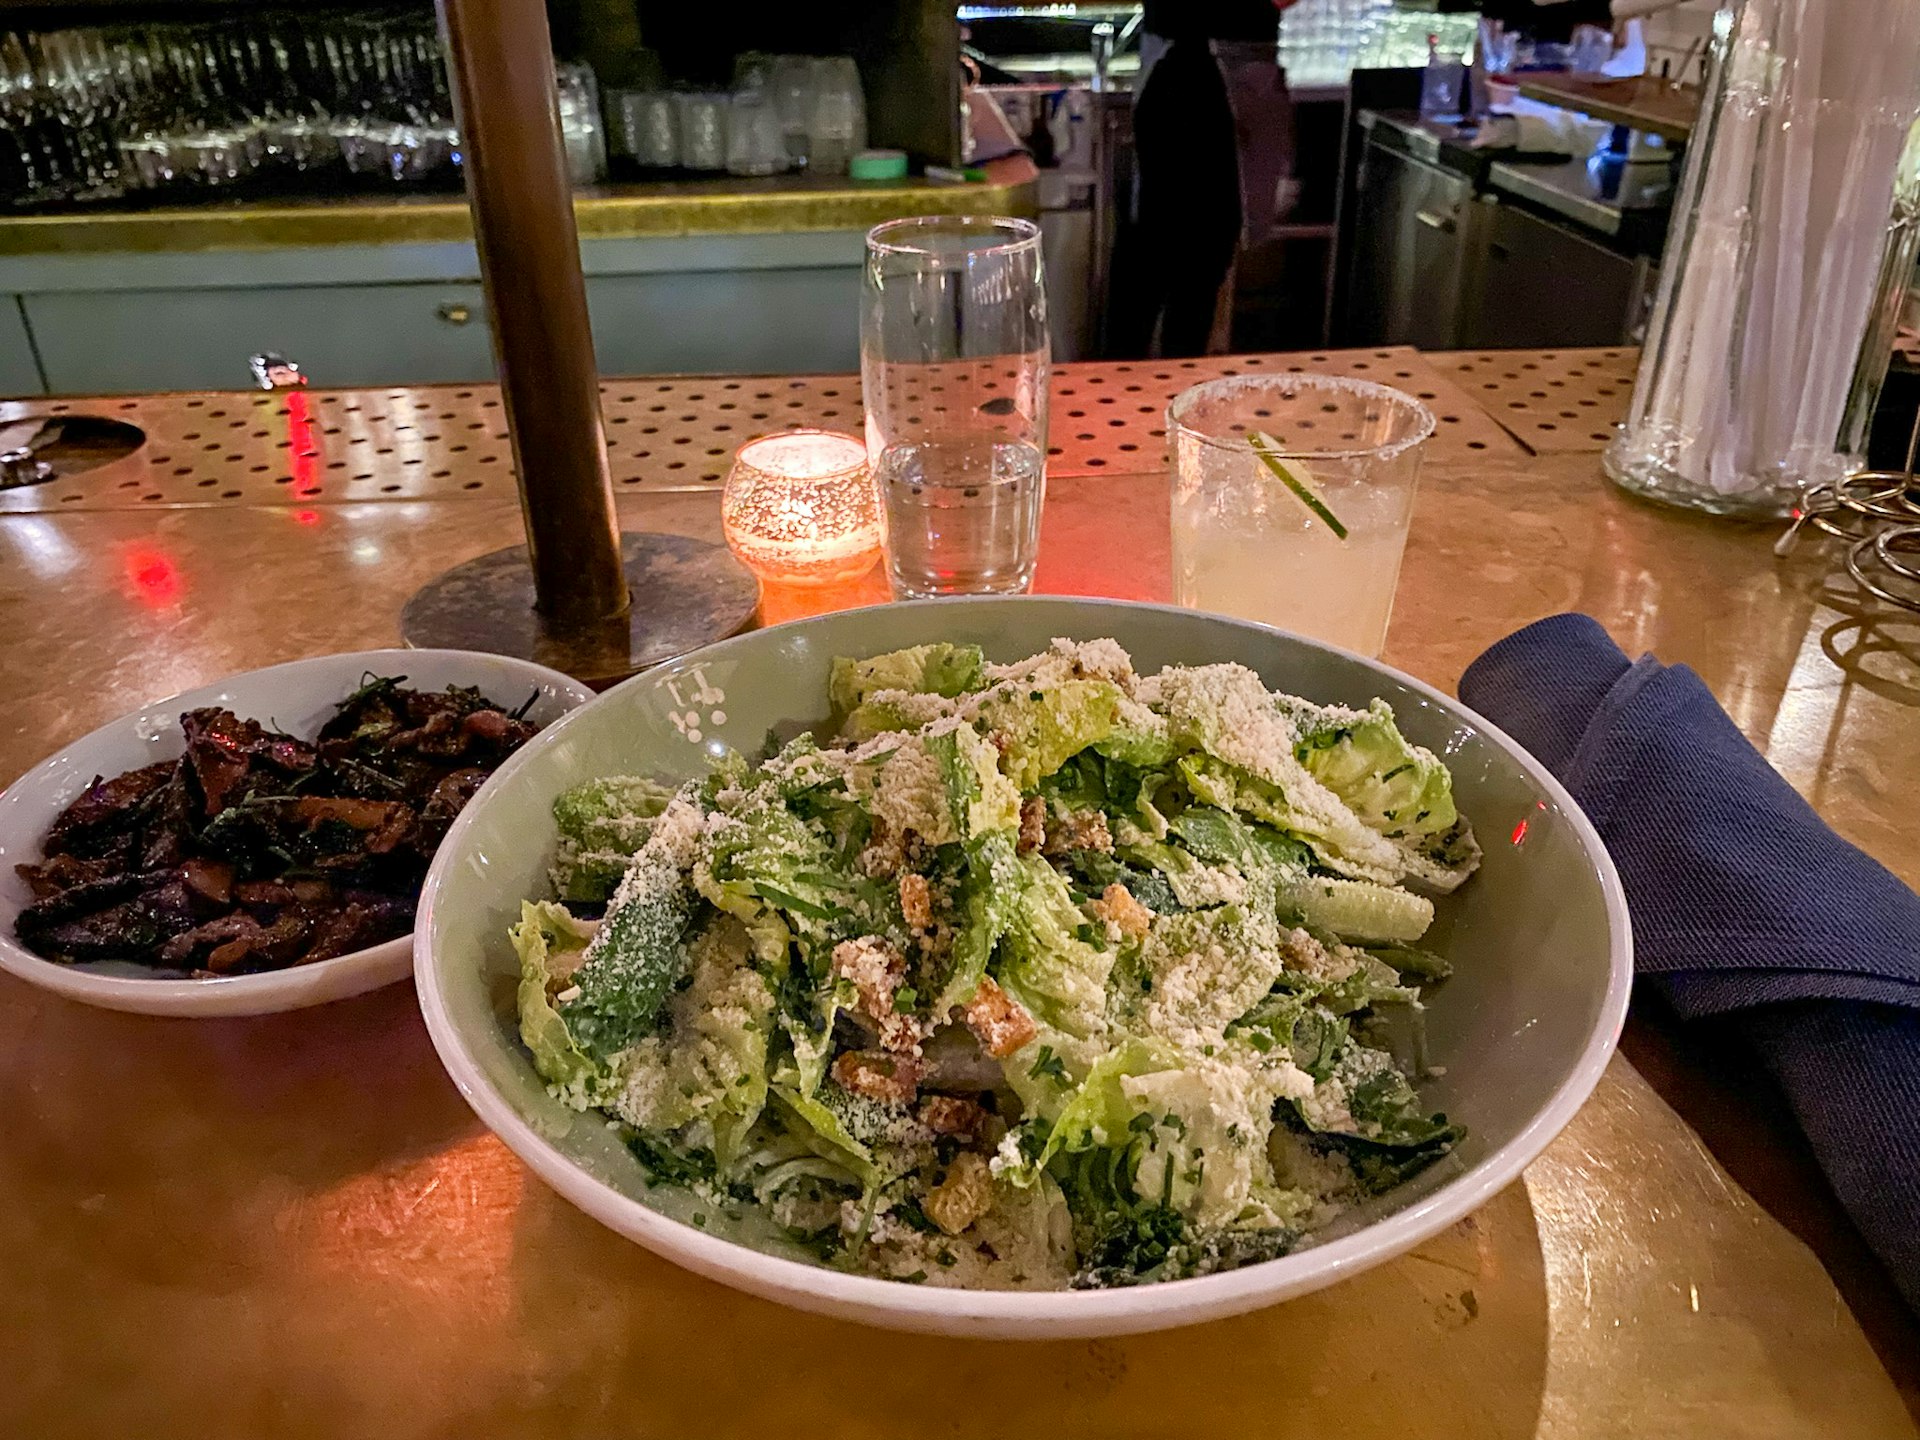 The Caesar salad at Klein's restaurant, Hoxton